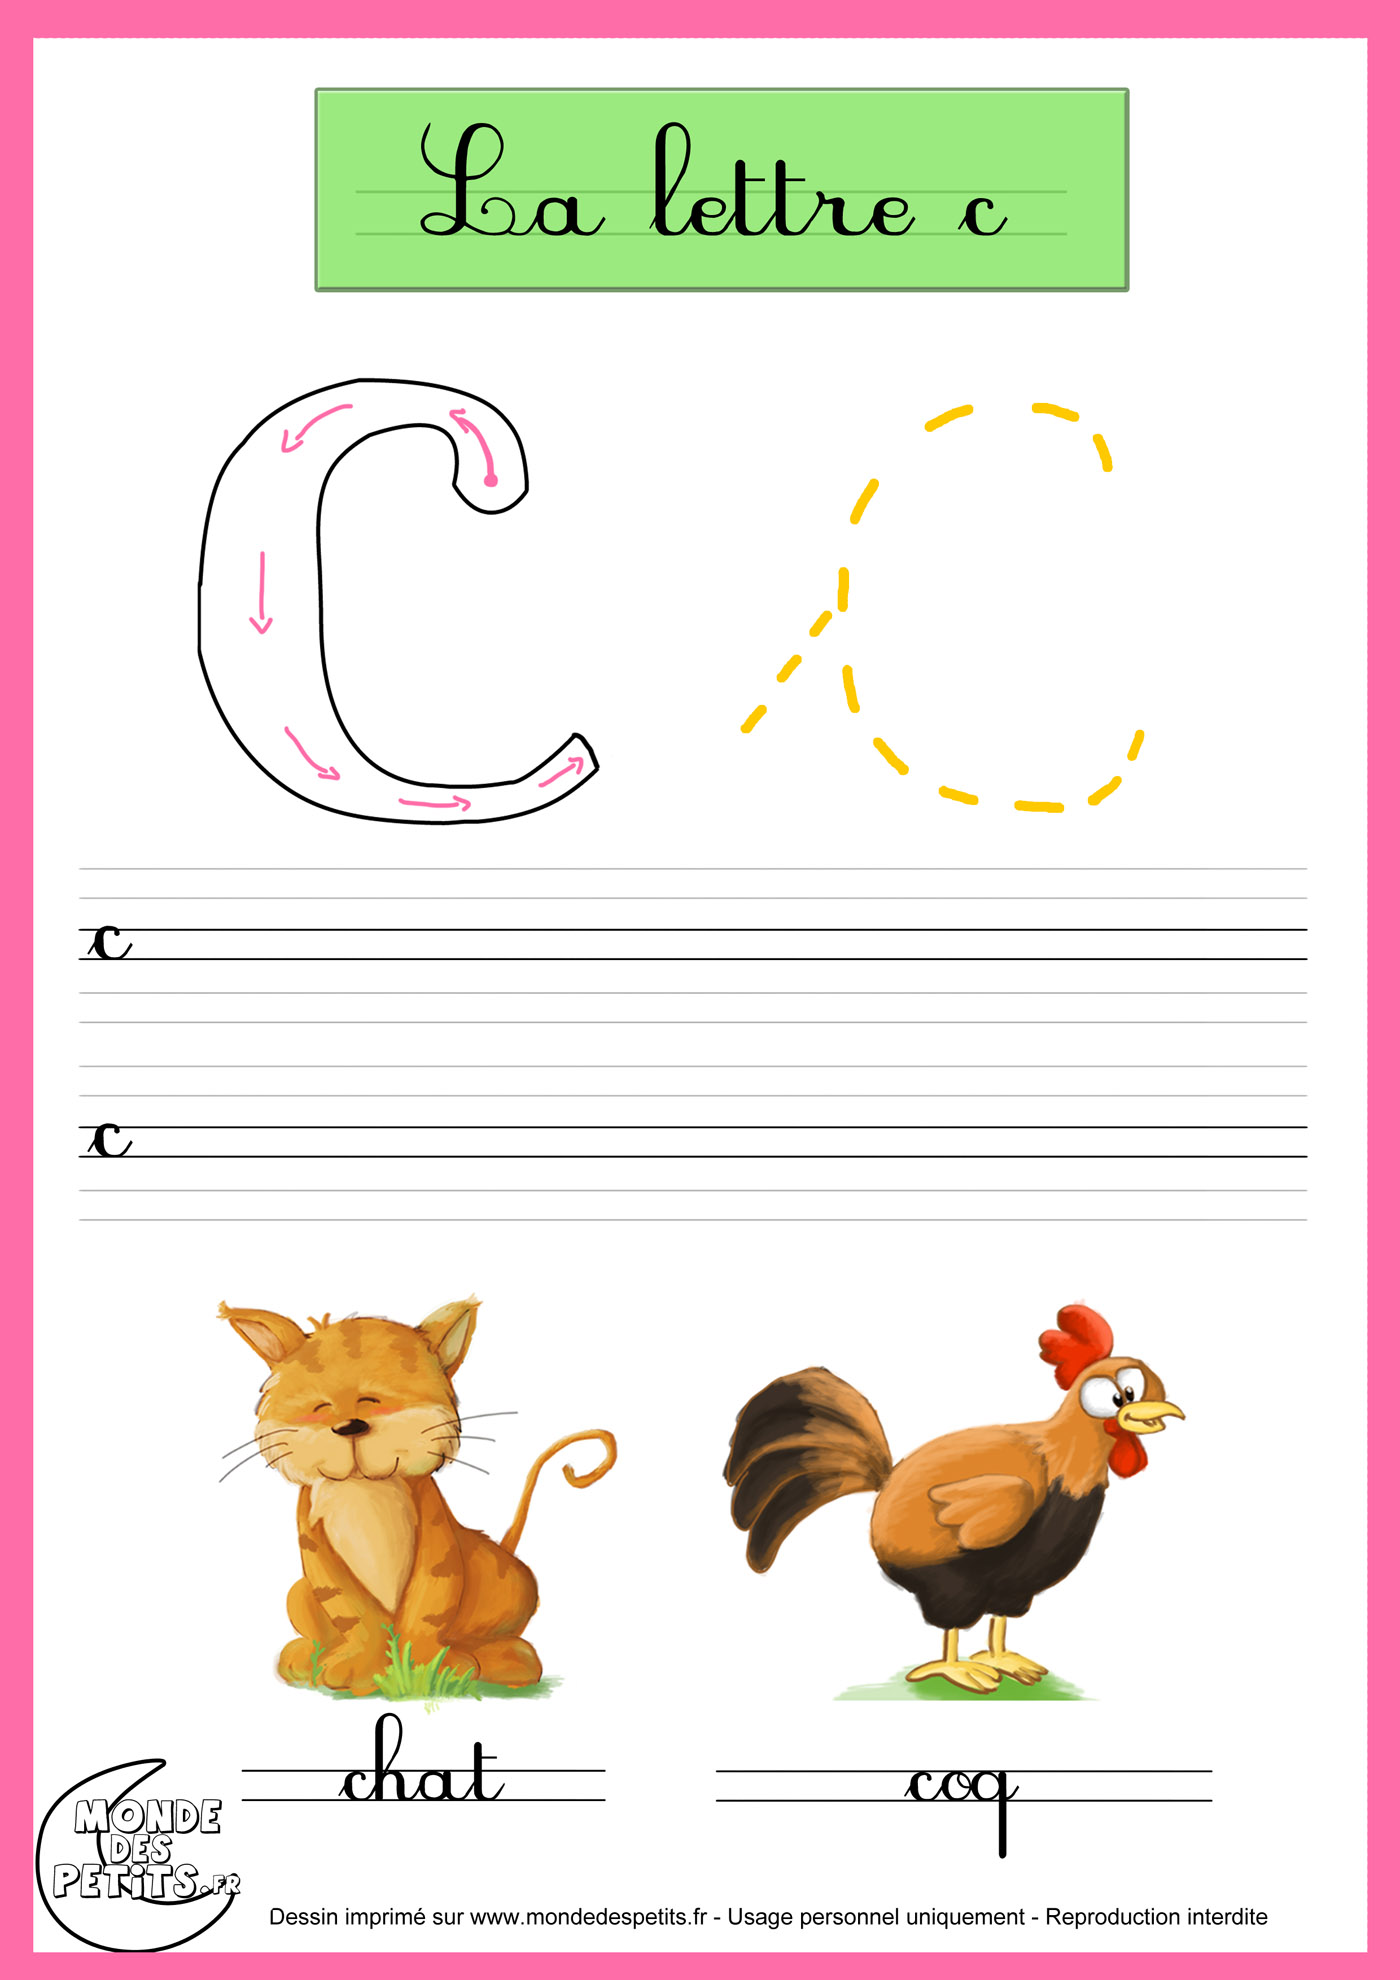 apprendre a ecrire les lettres de l alphabet en maternelle